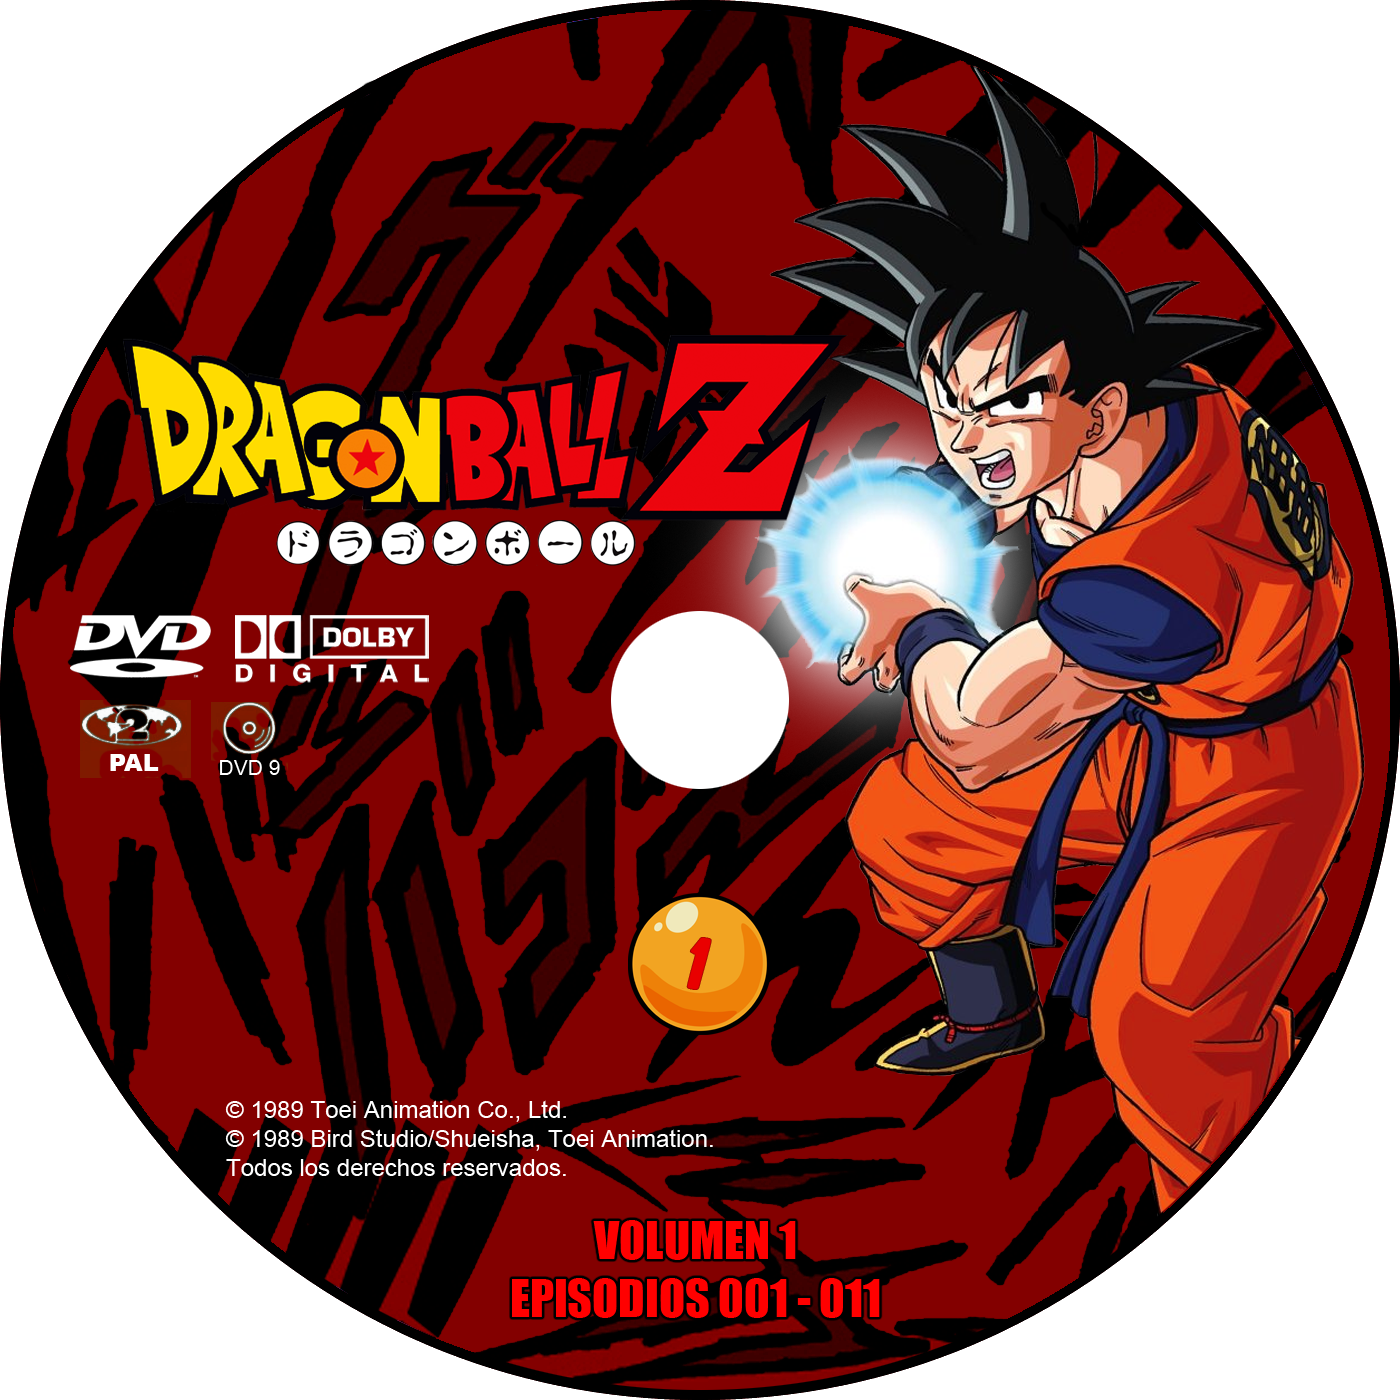 Dragon Ball Z DVD